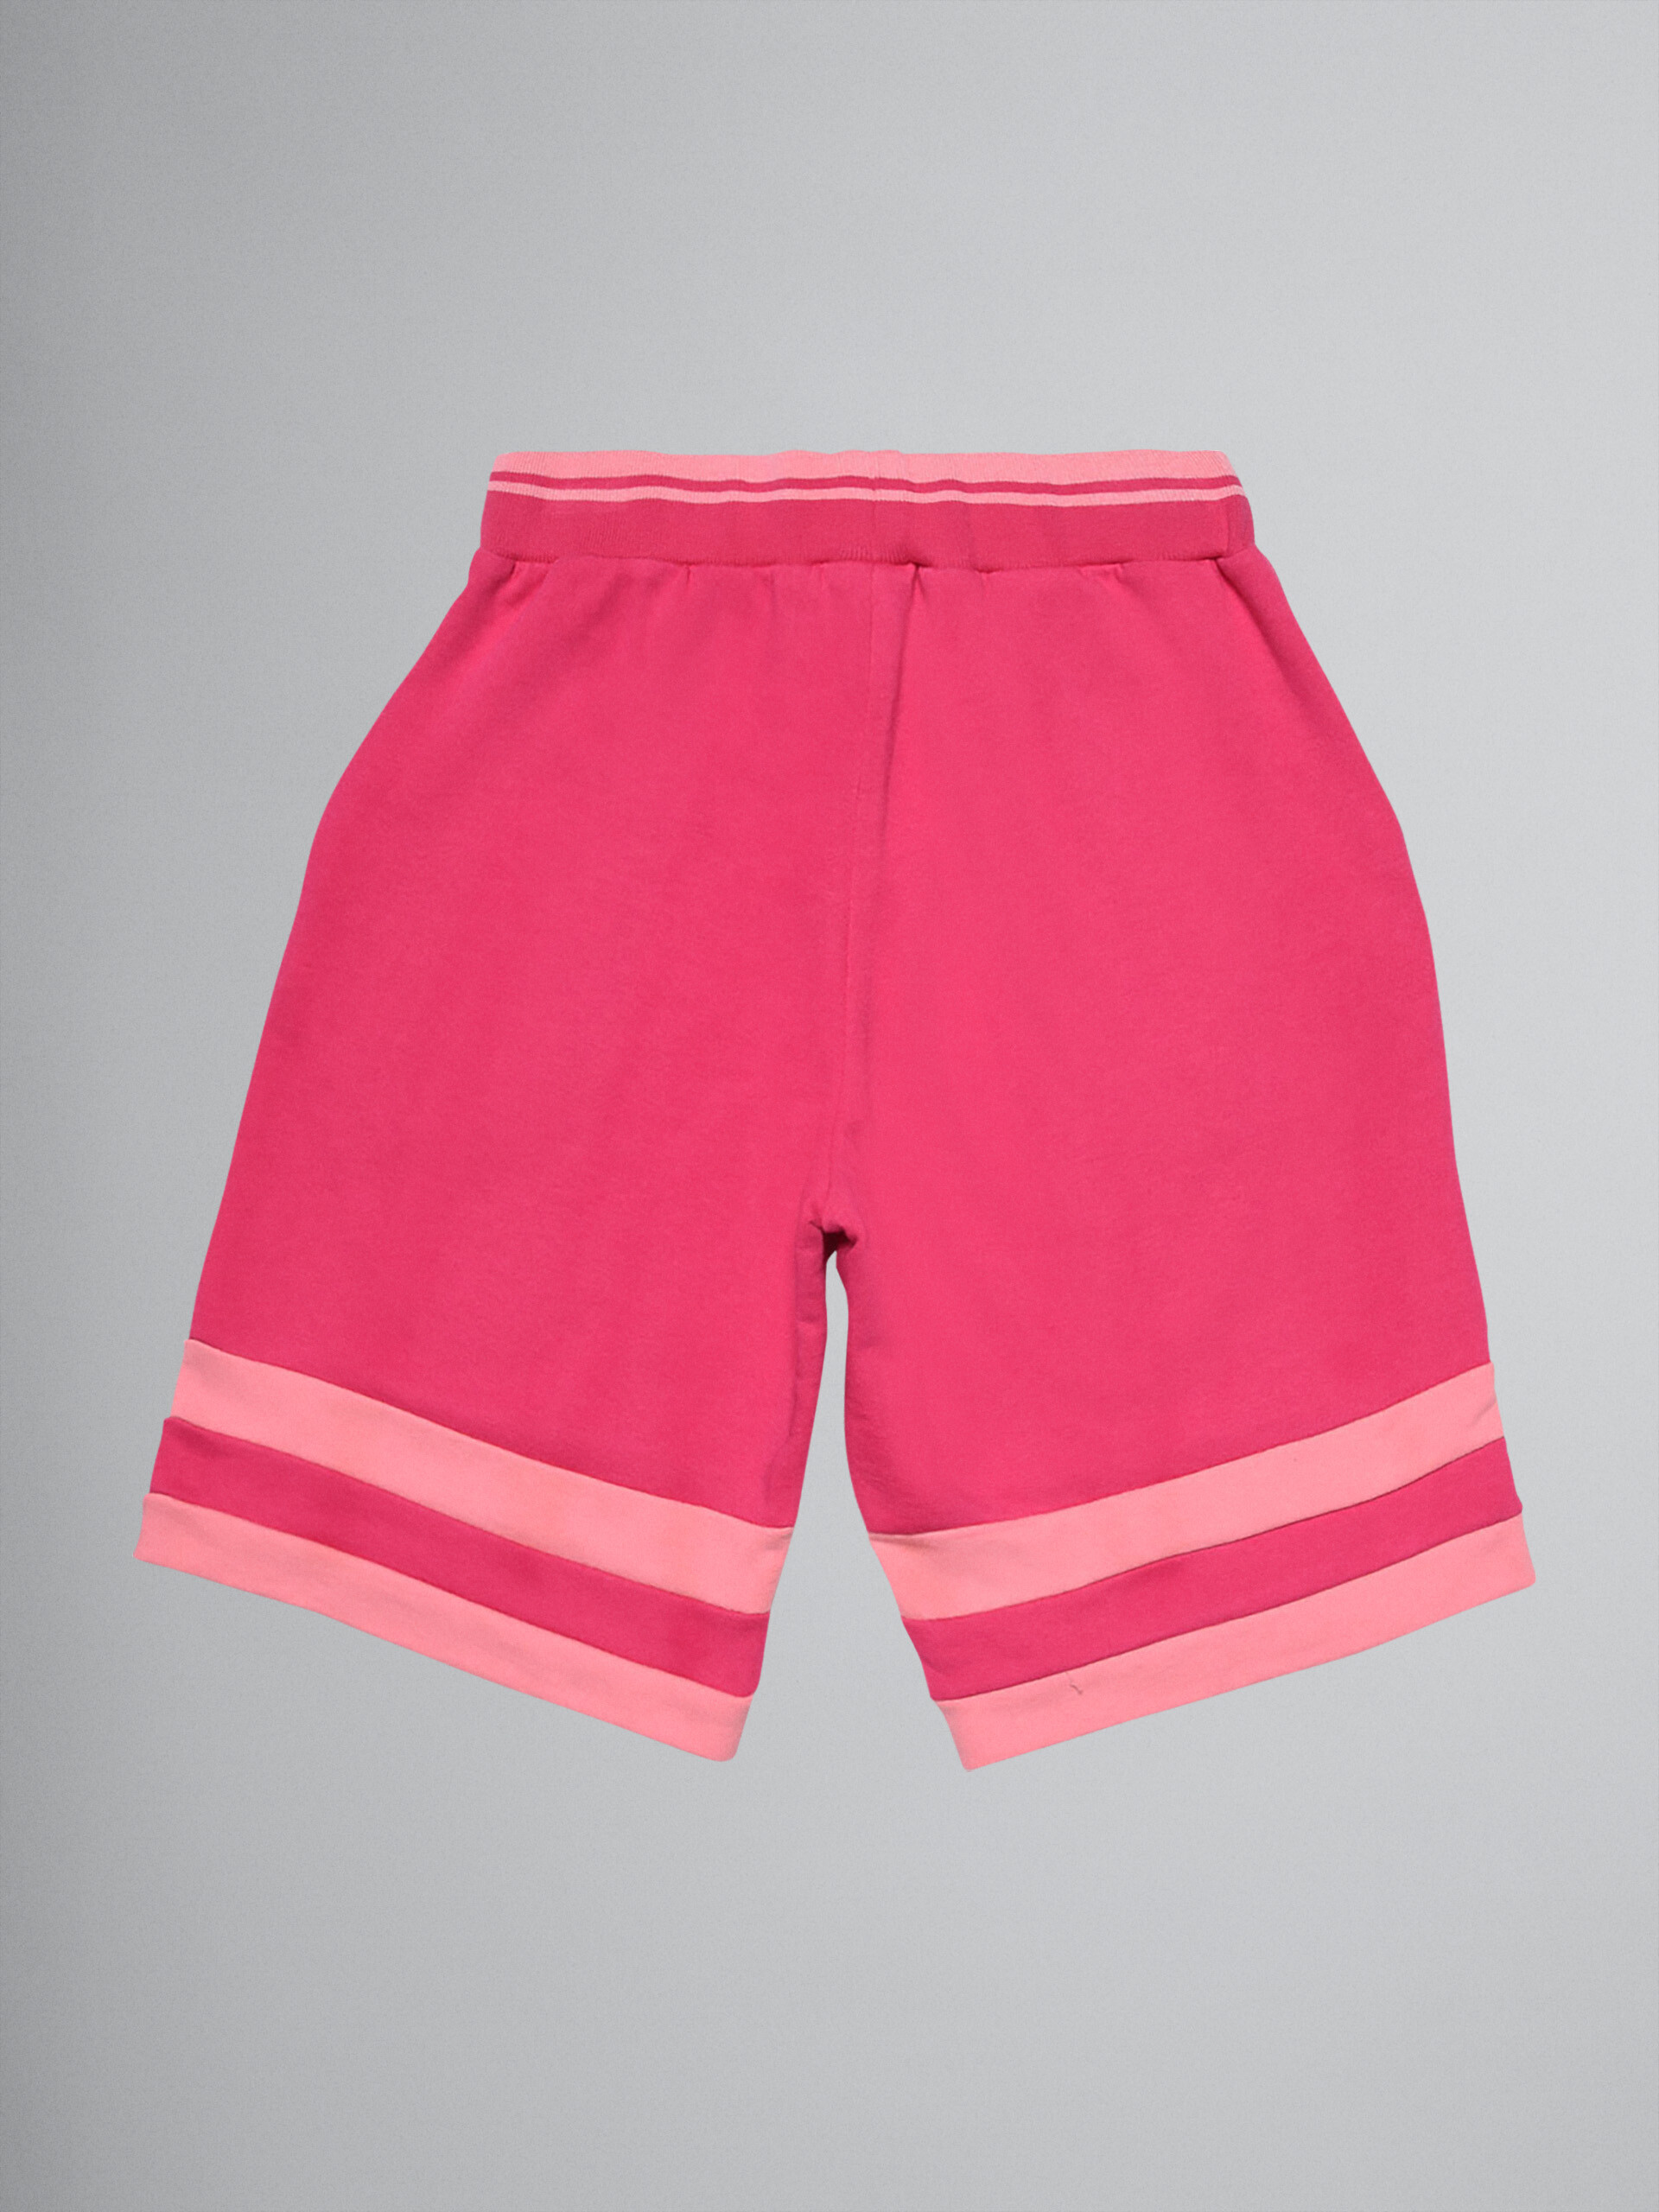 Pantalón de jogging corto sudadera de algodón rosa color block - Pantalones - Image 2